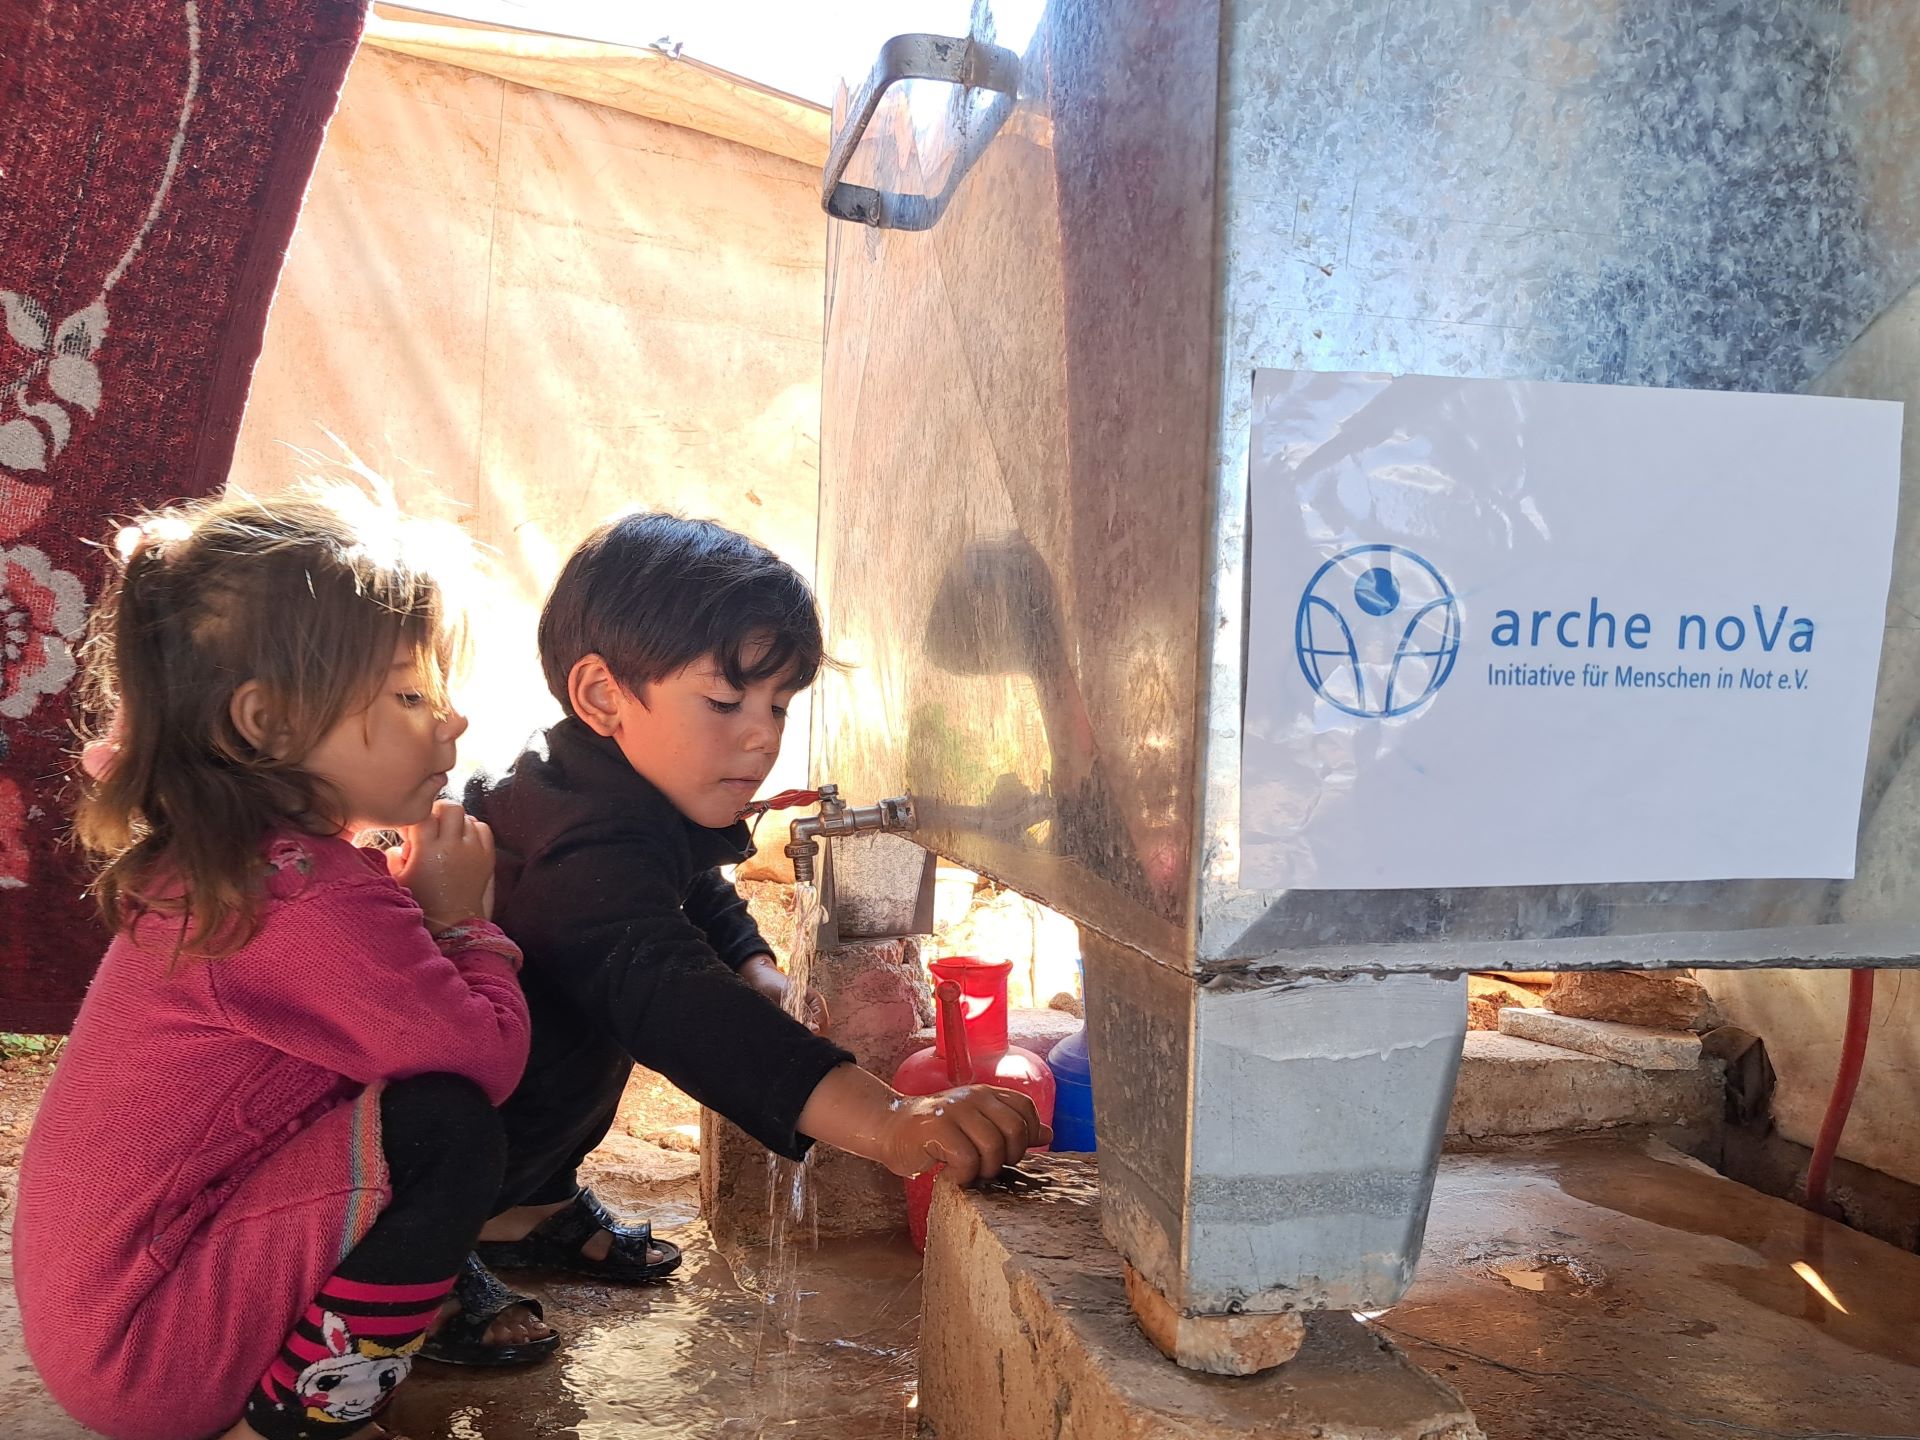 Das Bild zeigt zwei Kinder neben einem Wassertank aus Metall, die sich die Hände waschen. Auf dem Tank ist das Logo von arche noVa zu sehen.